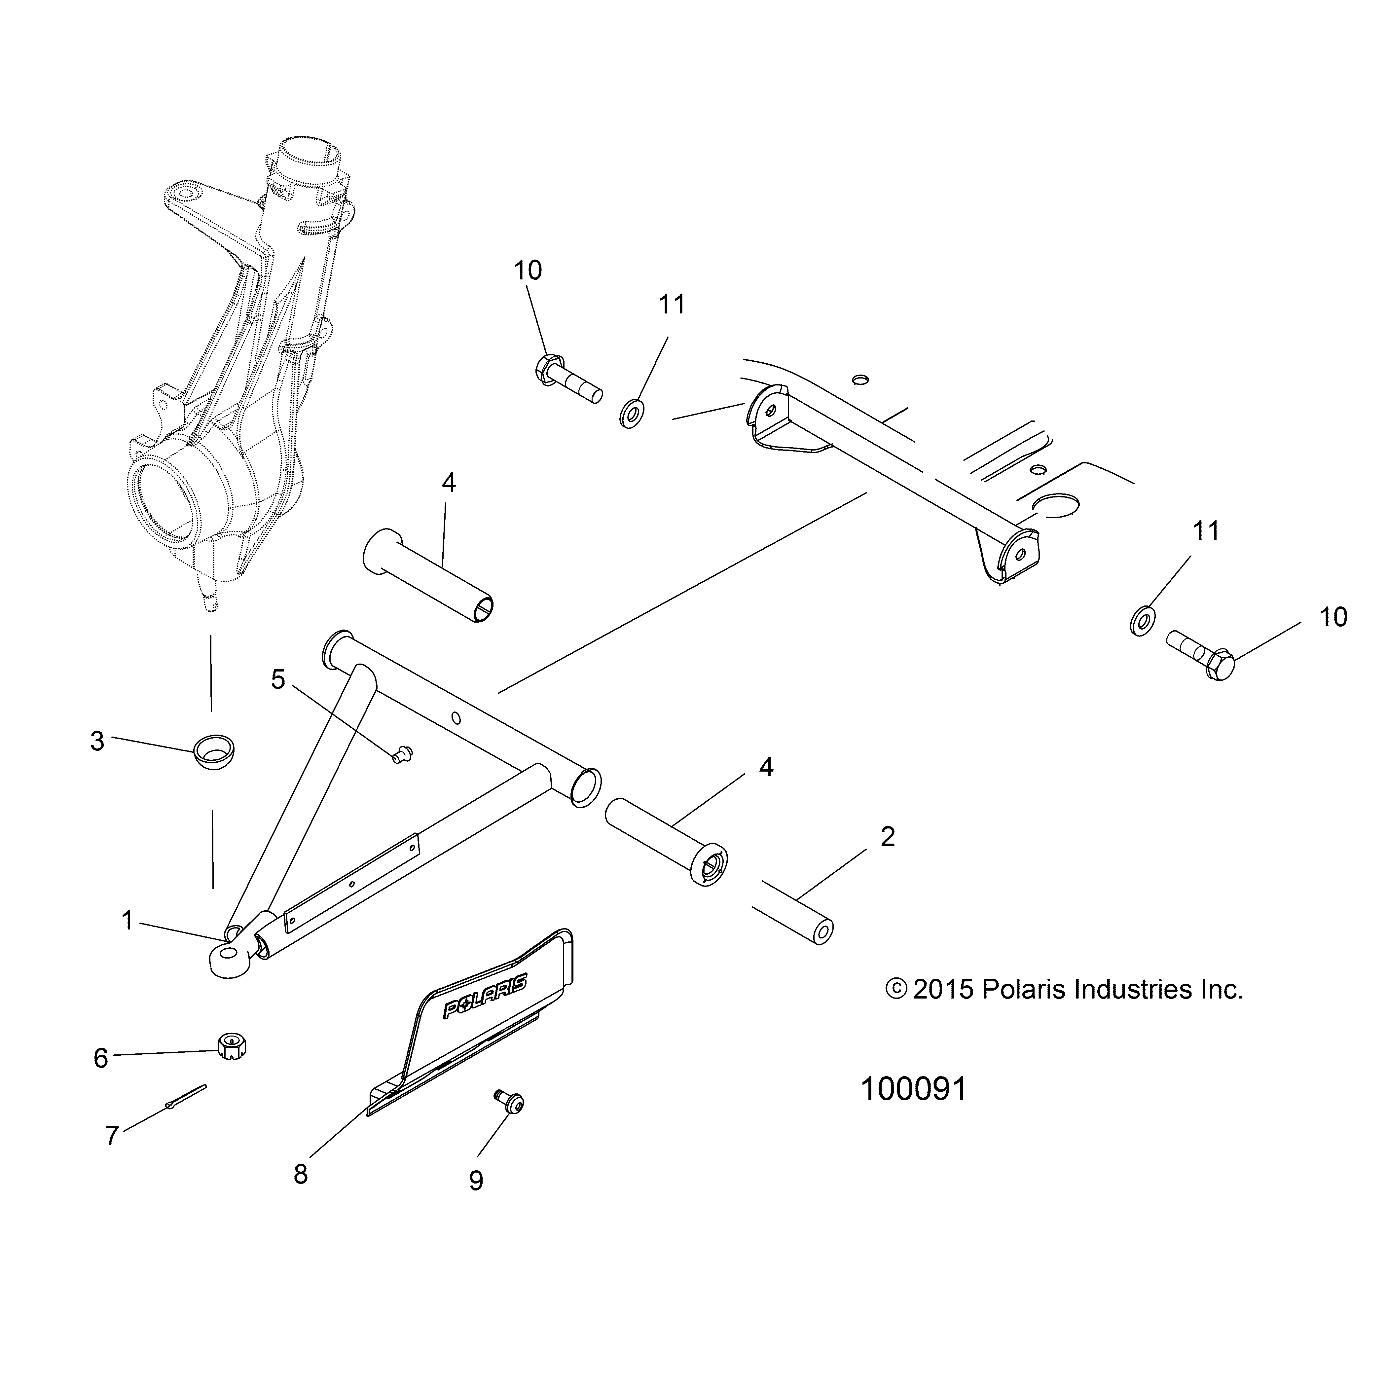 Foto diagrama Polaris que contem a peça 1542162-458